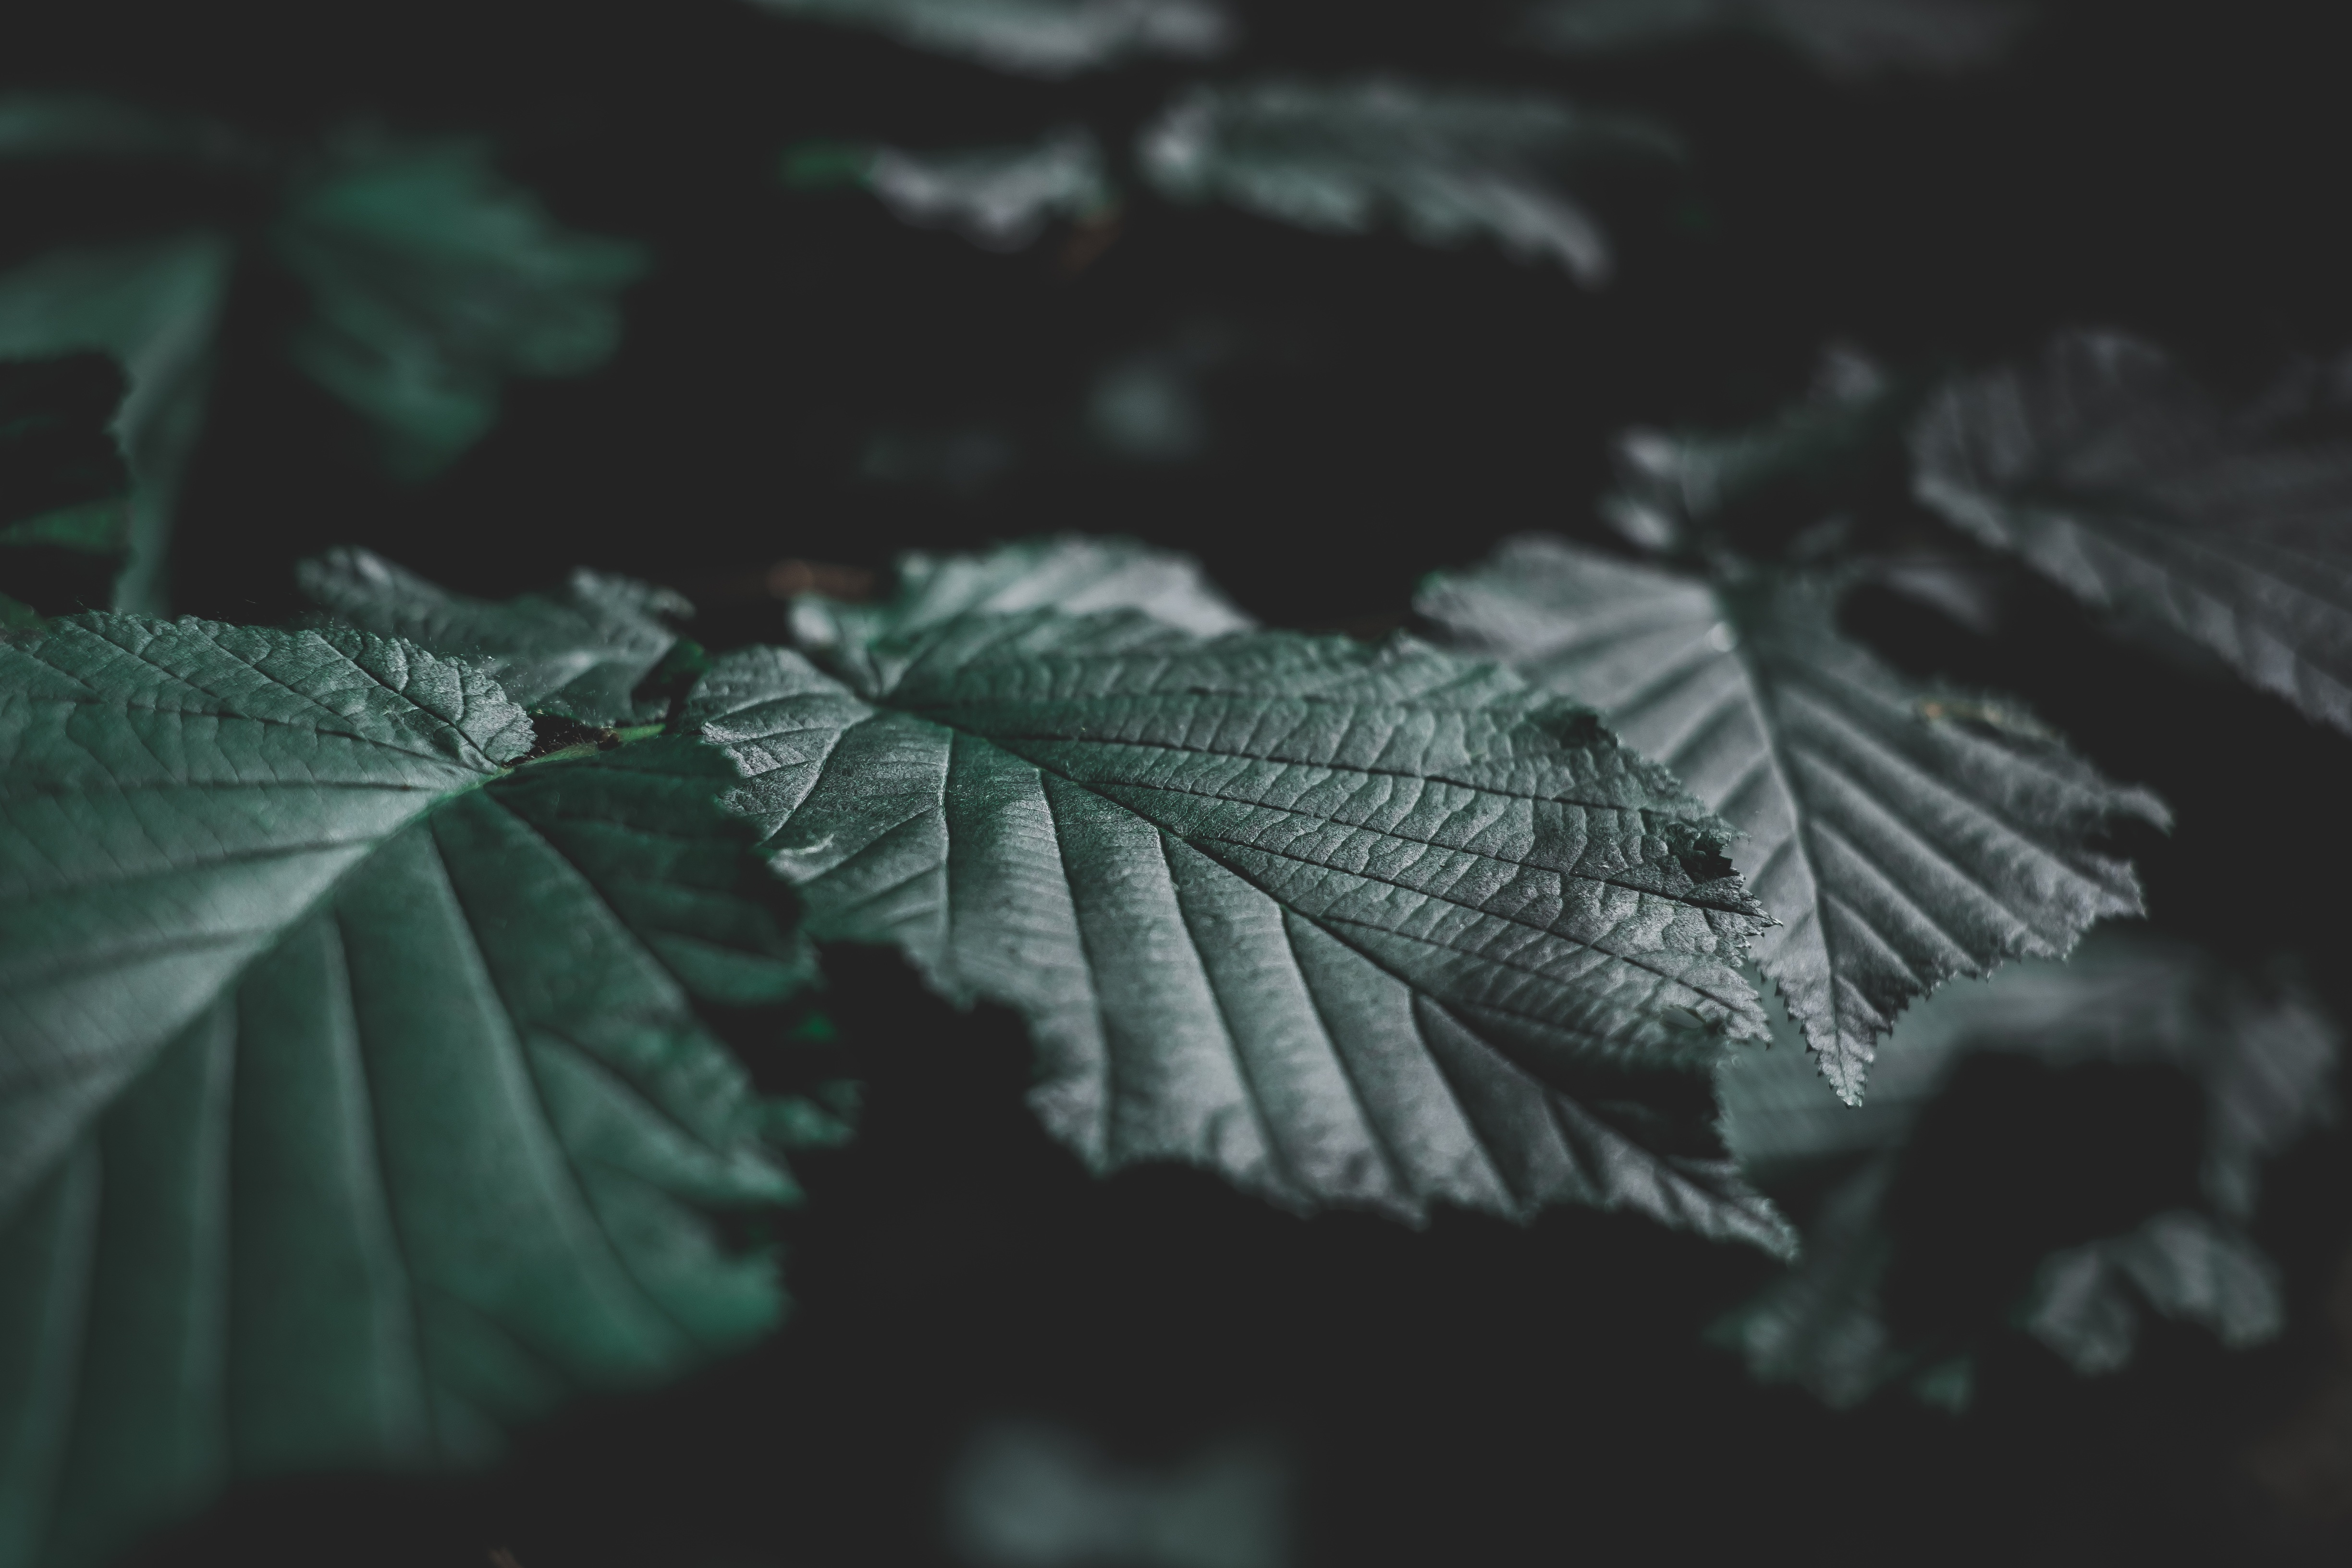 Темно зеленые листья